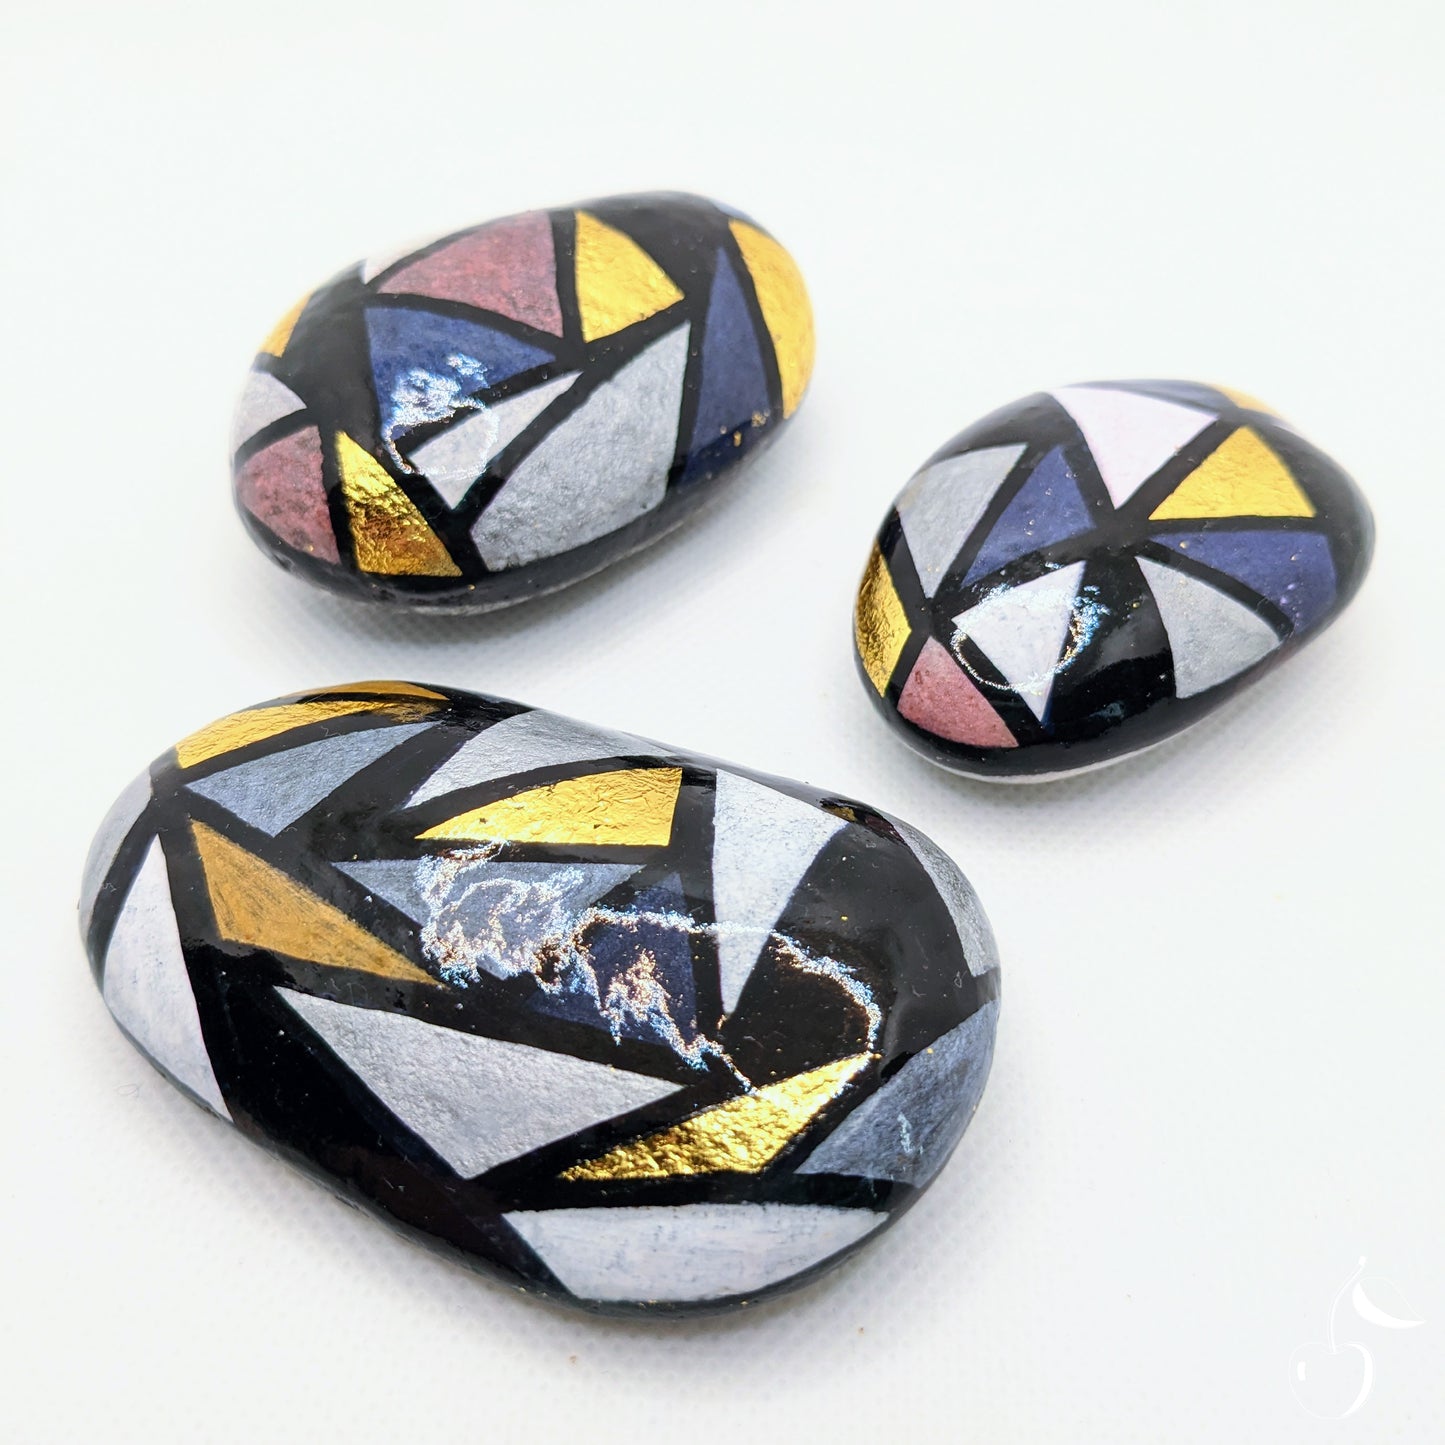 Galets peint avec des triangles grises, bleus et dorée